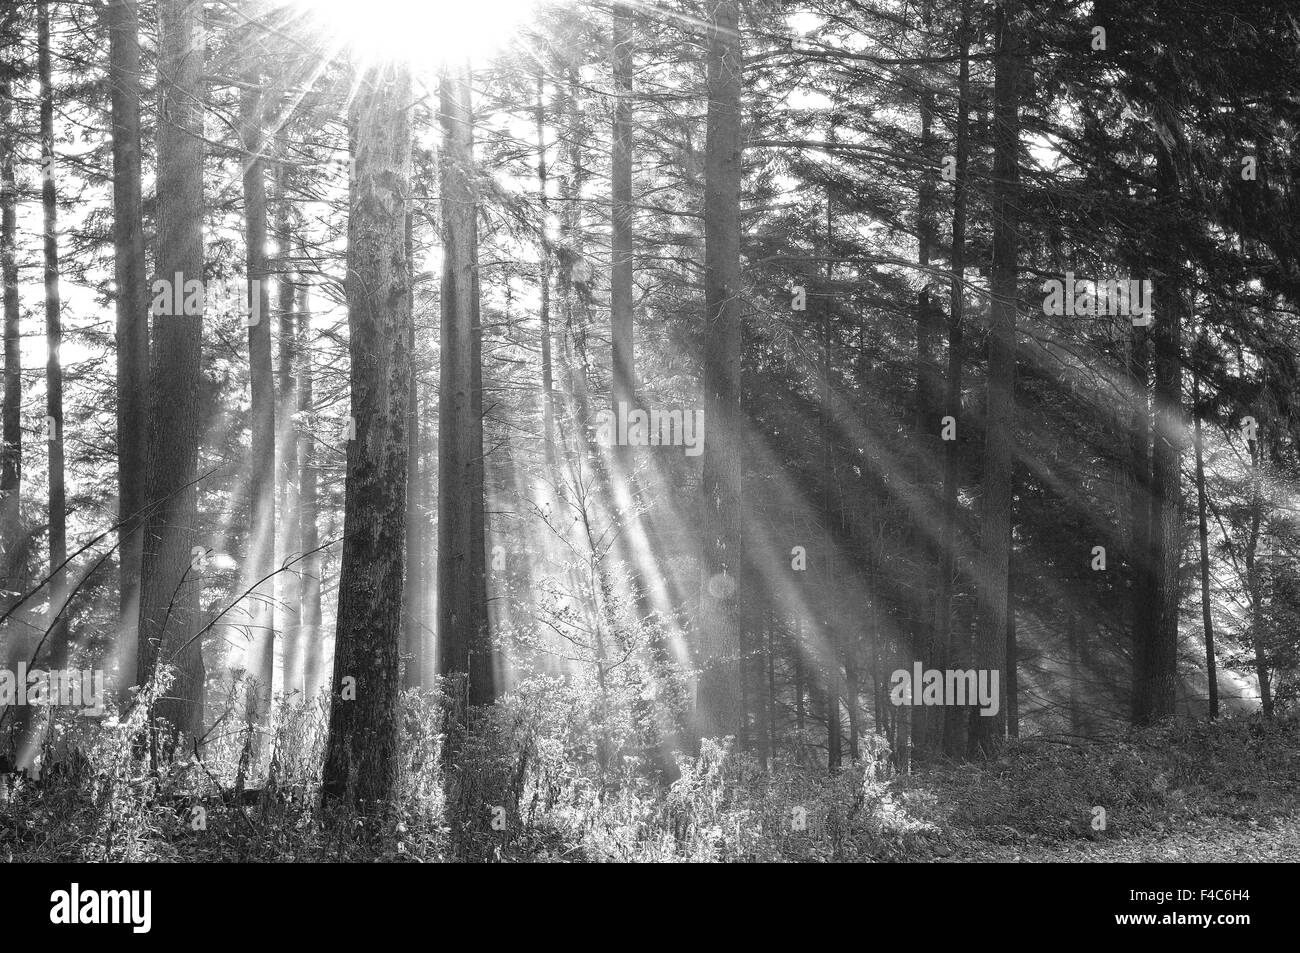 Los rayos solares inundado en el bosque nuboso bw Foto de stock